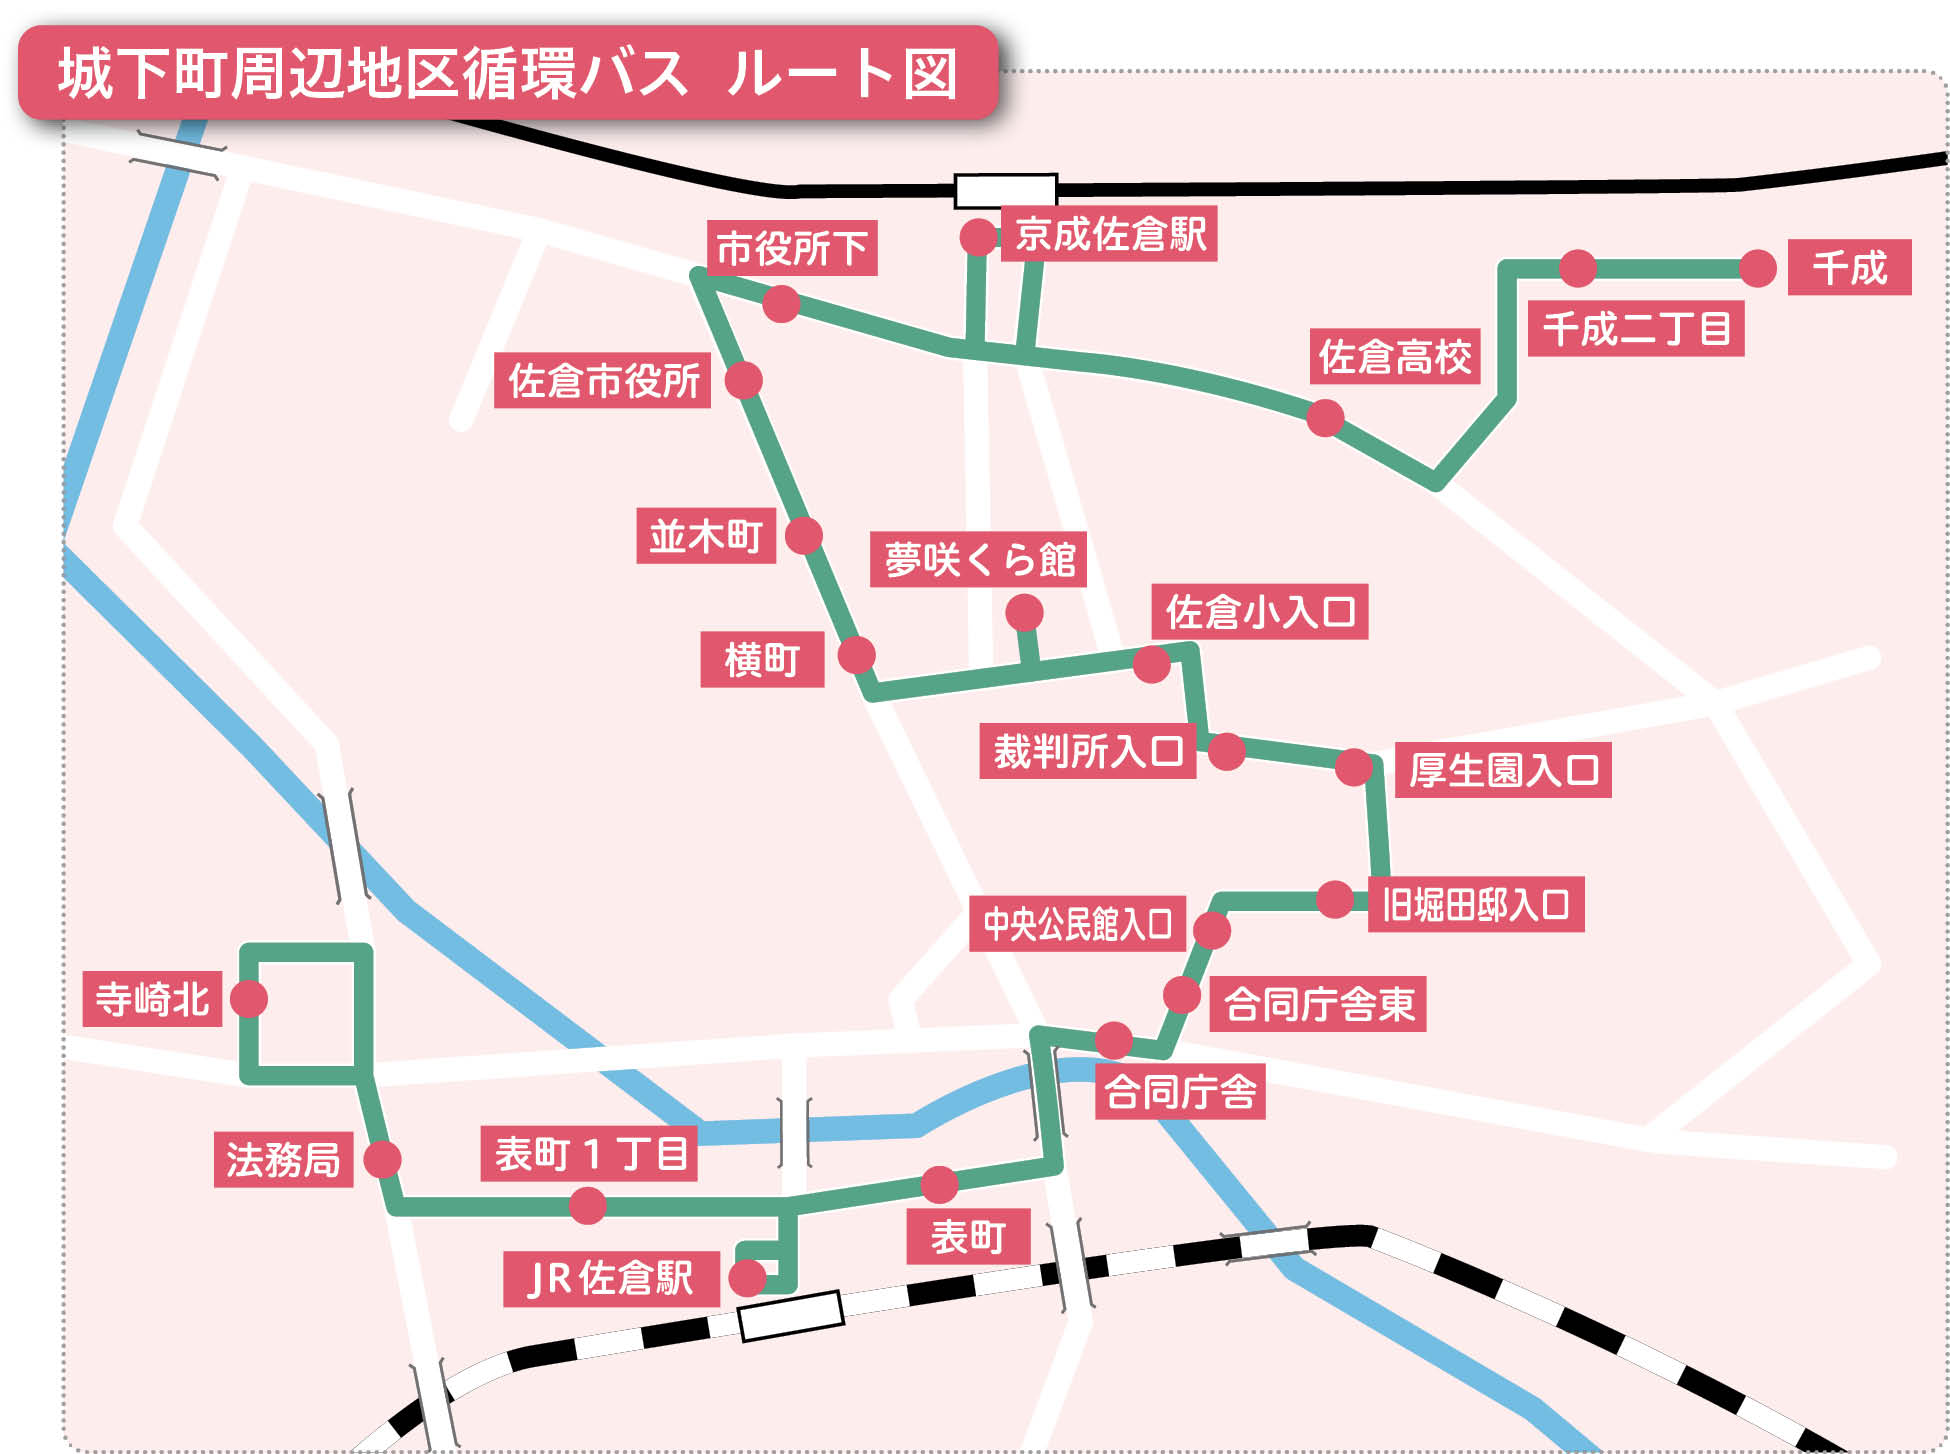 城下町周辺地区循環バスルート図（4月1日から）